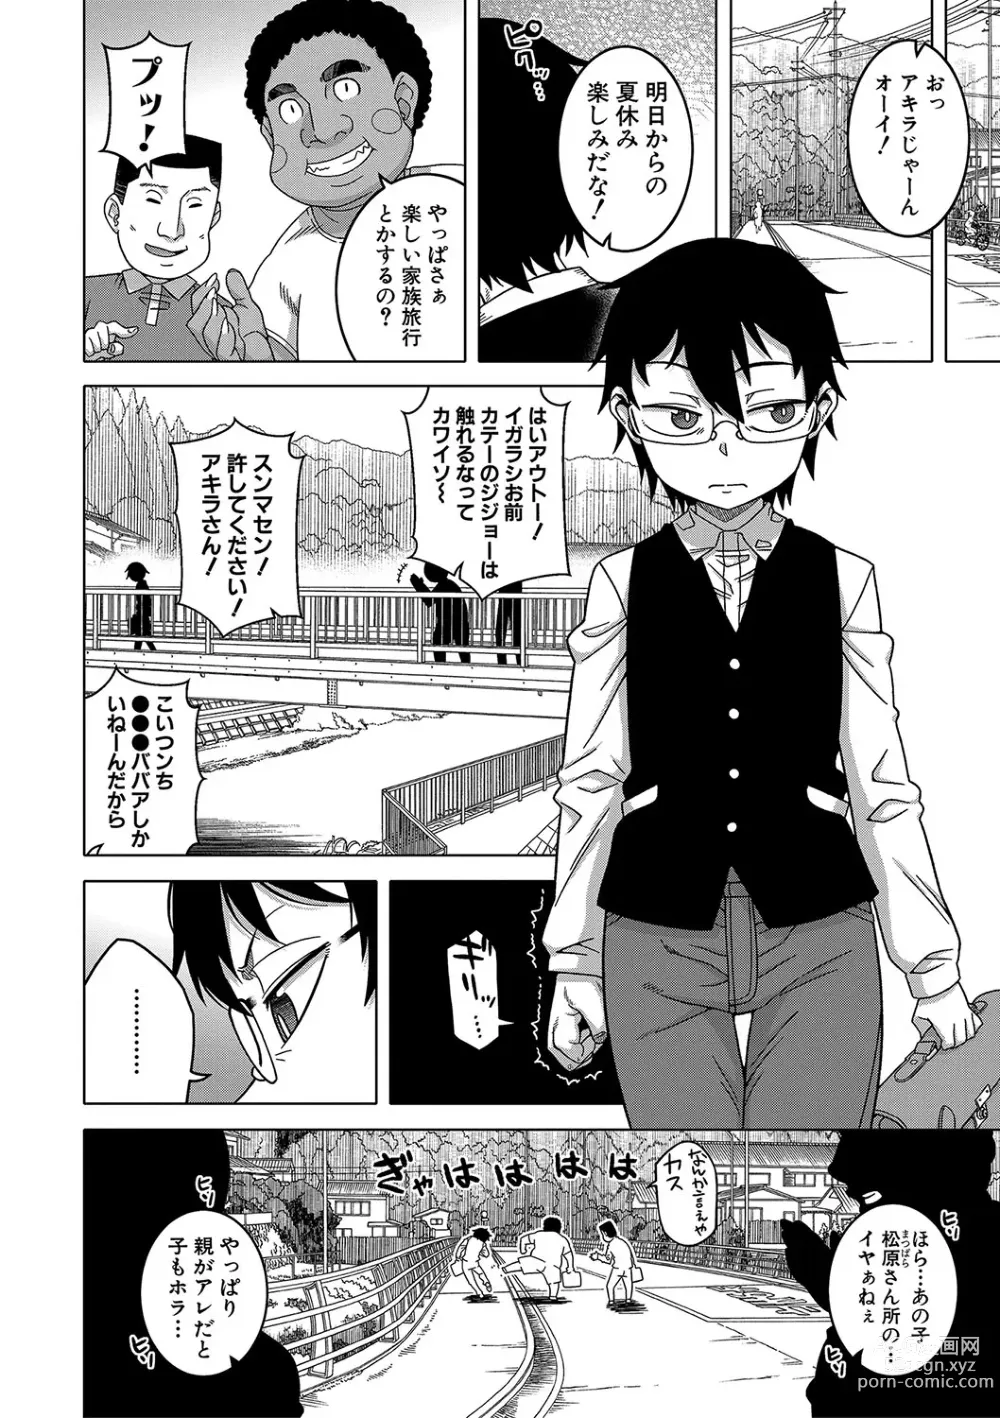 Page 7 of manga Kami-sama no Tsukurikata